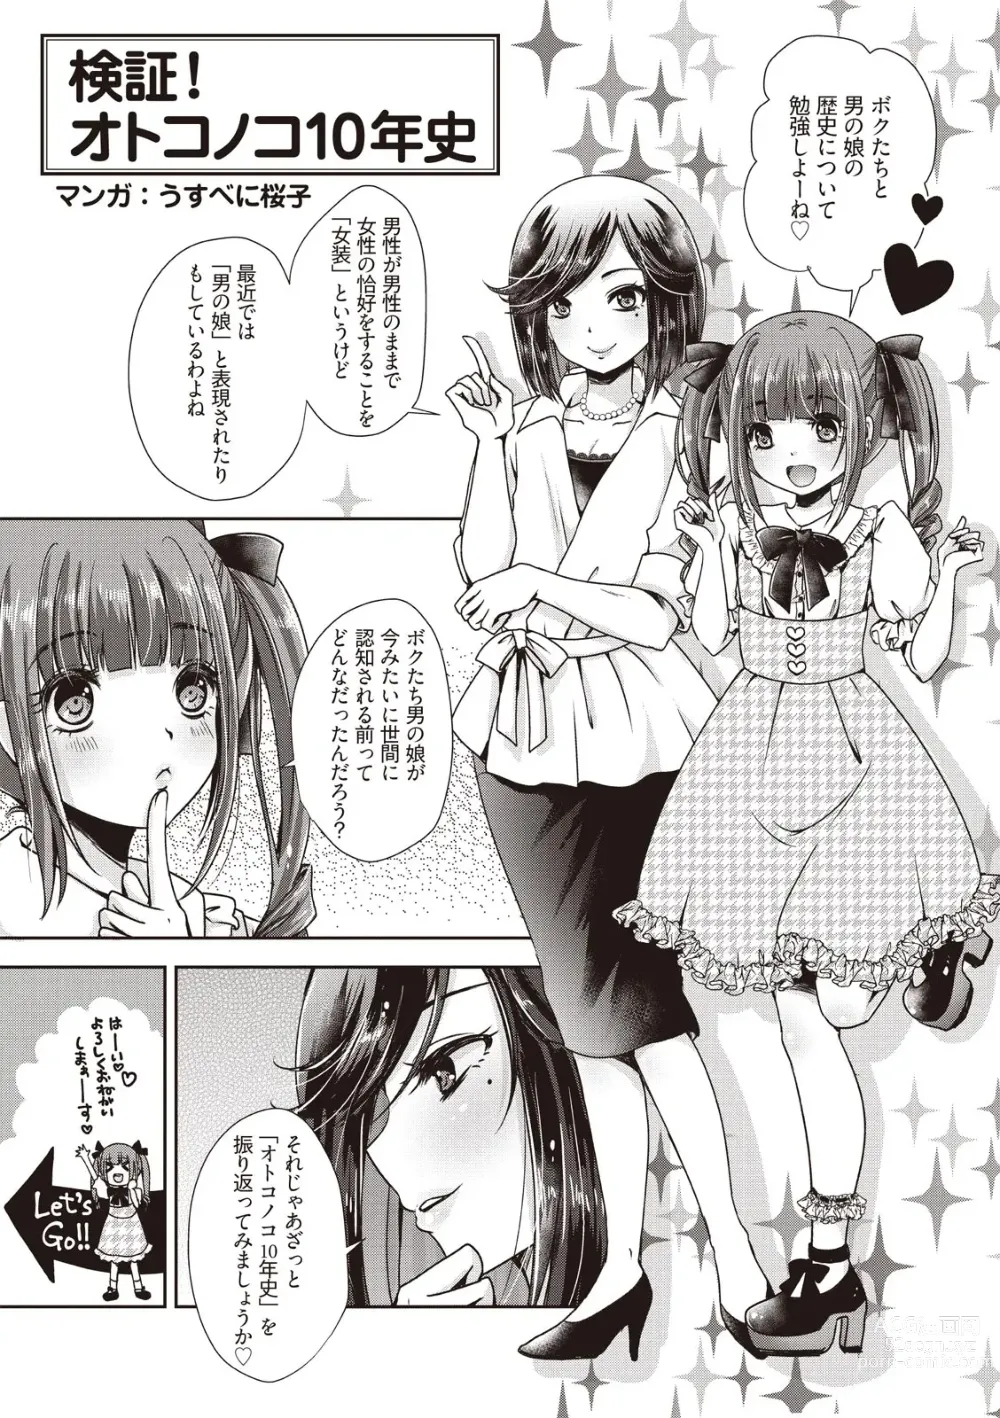 Page 5 of manga Manga de Furikaeru Otokonoko 10-nenshi